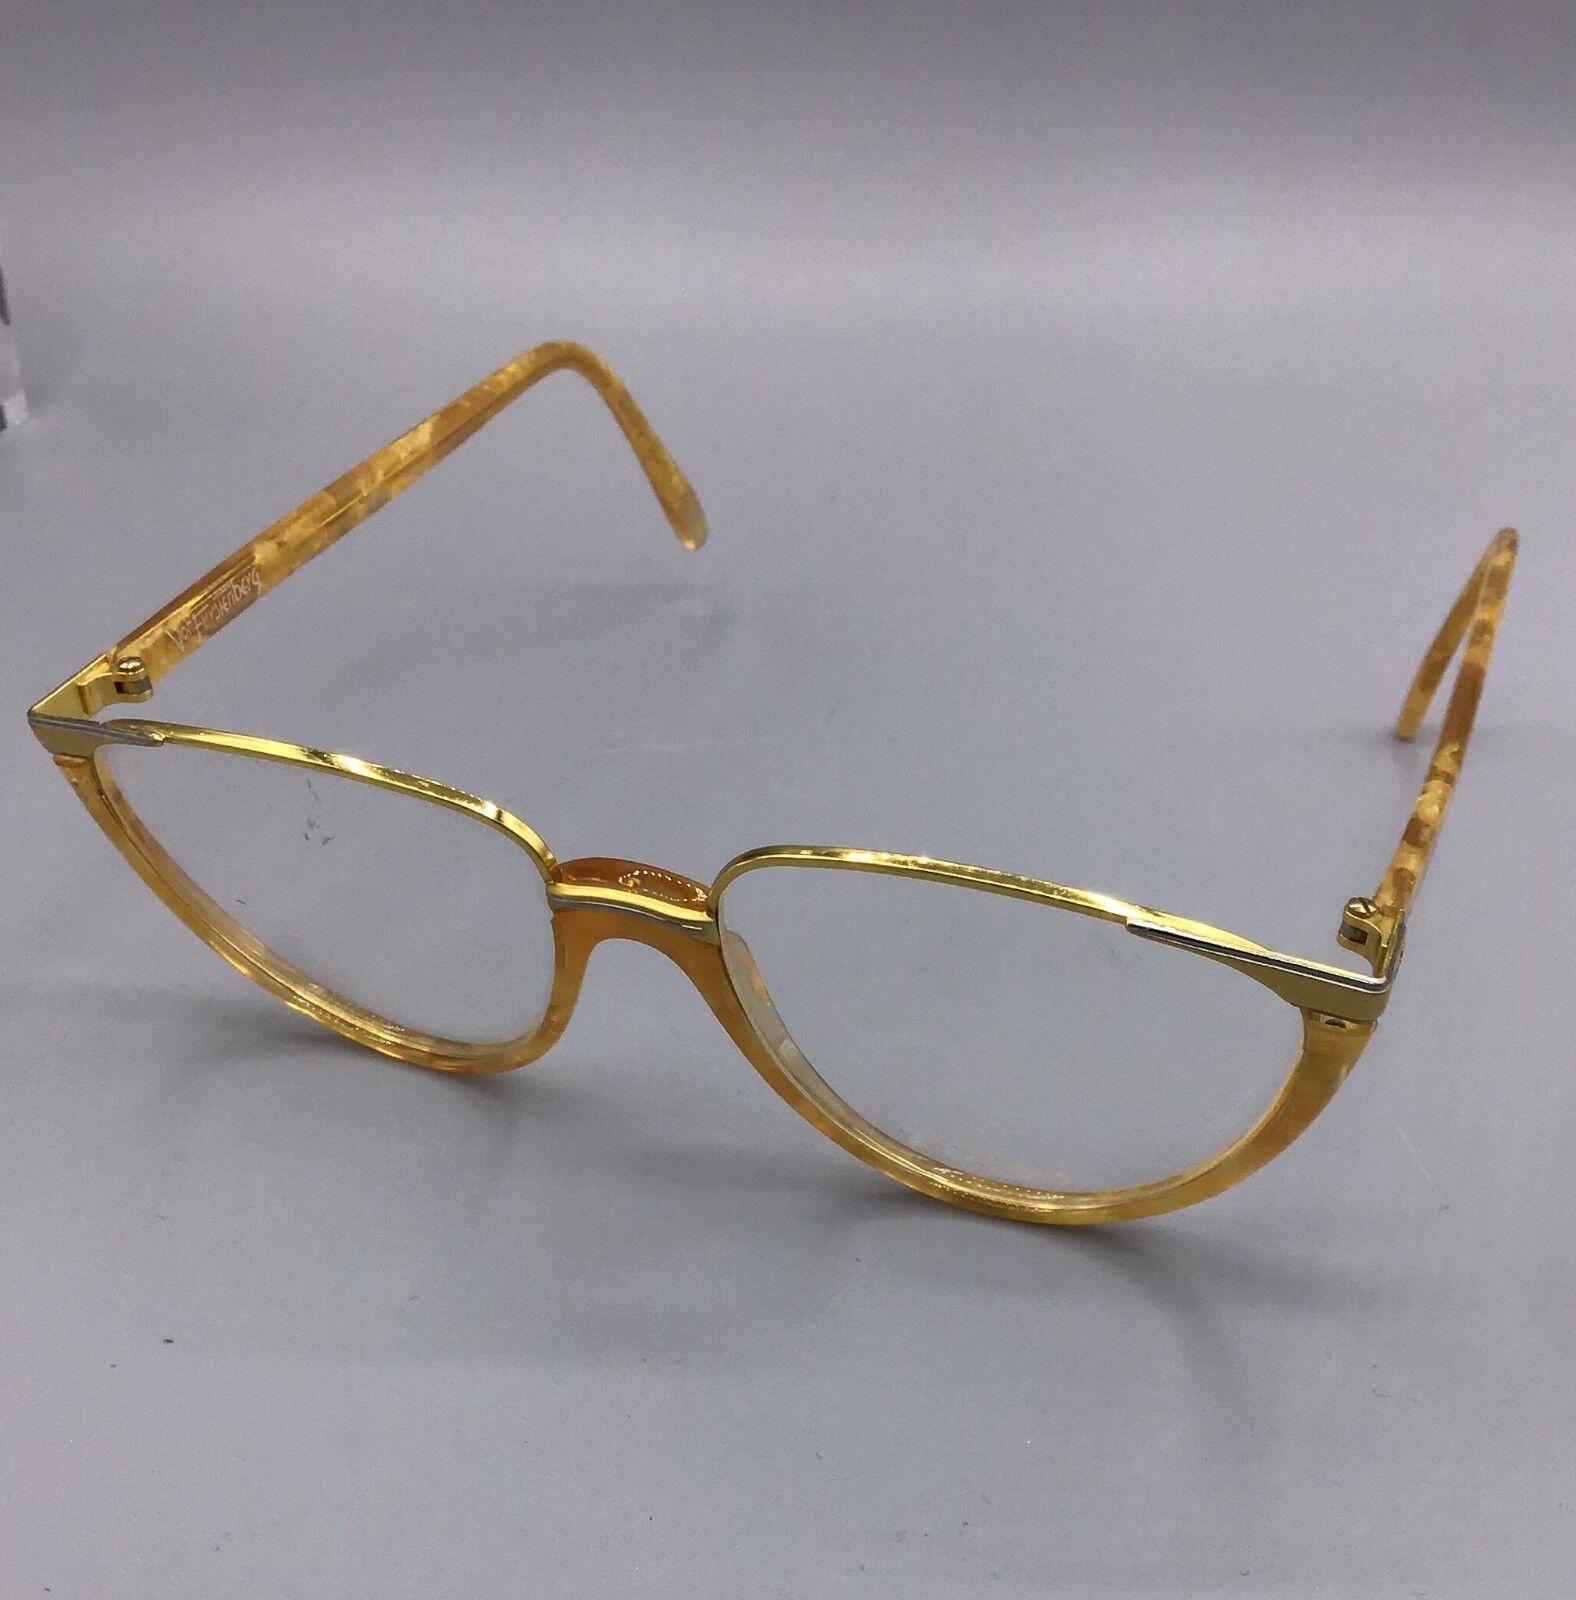 Von Furstenberg occhiale vintage Eyewear brillen lunettes frame